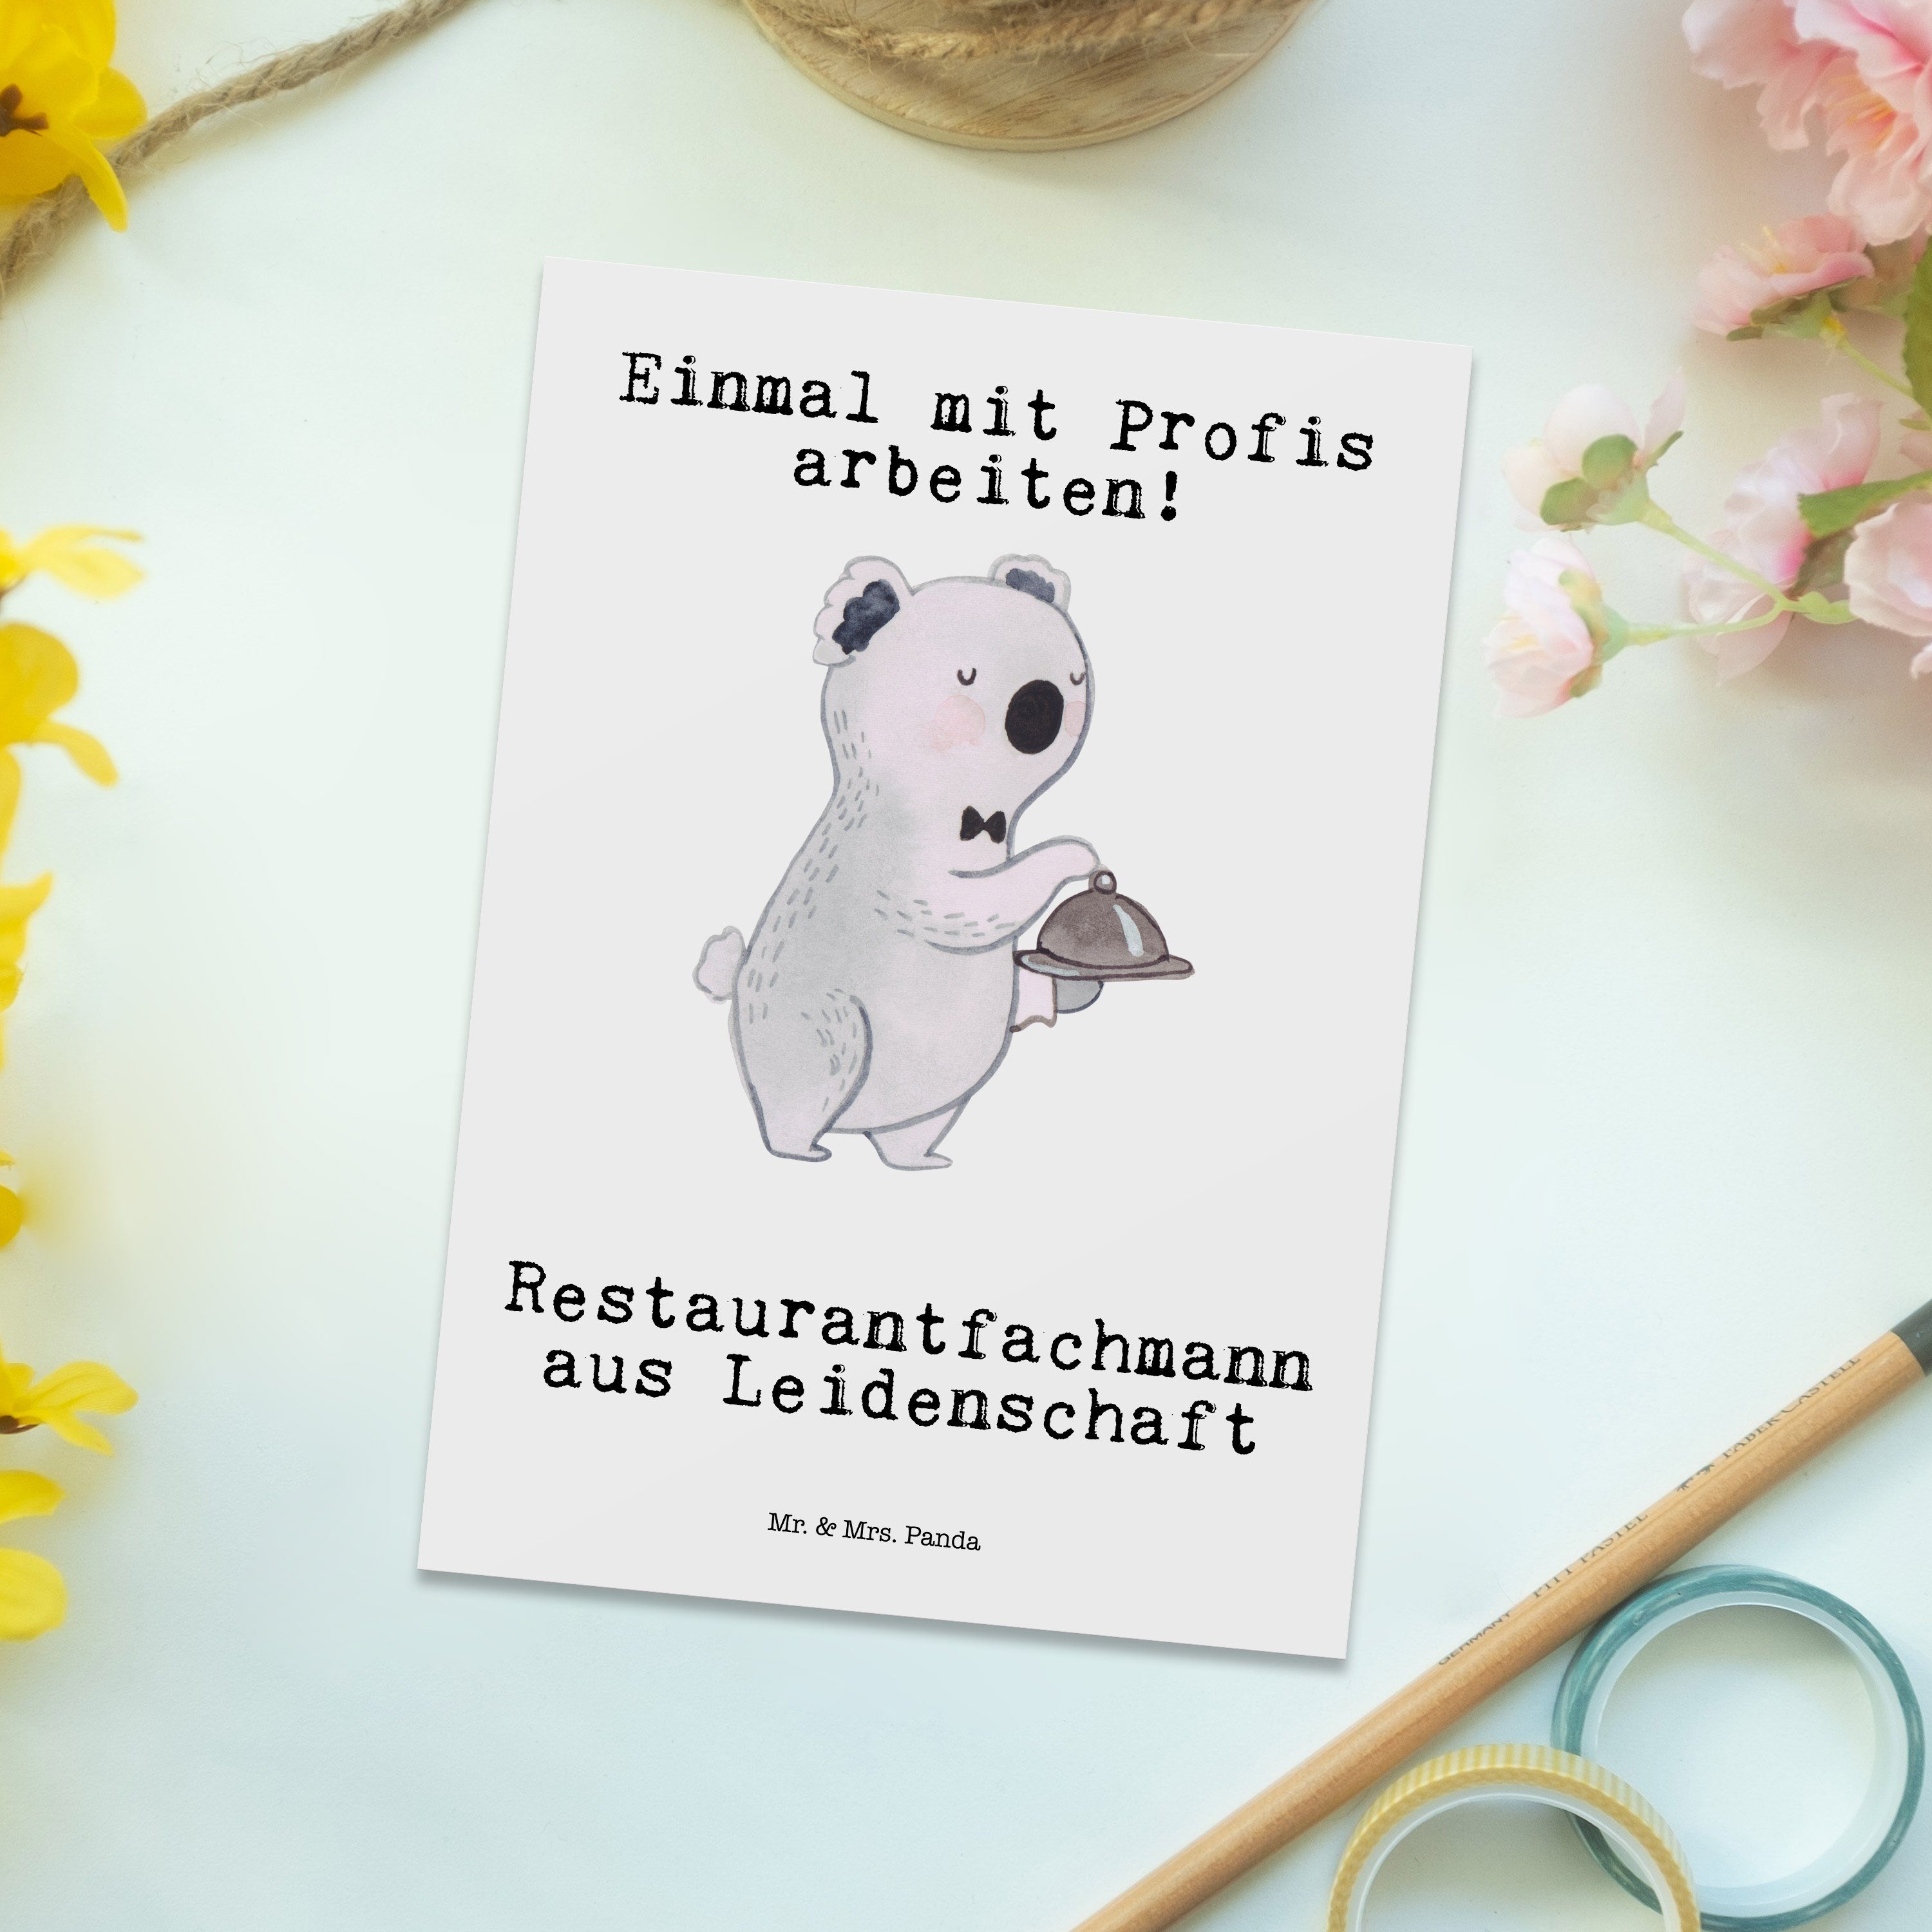 Mr. & Mrs. Panda Postkarte - Geschenk, Leidenschaft - Weiß Restaurantfachmann Gesch aus Kollege